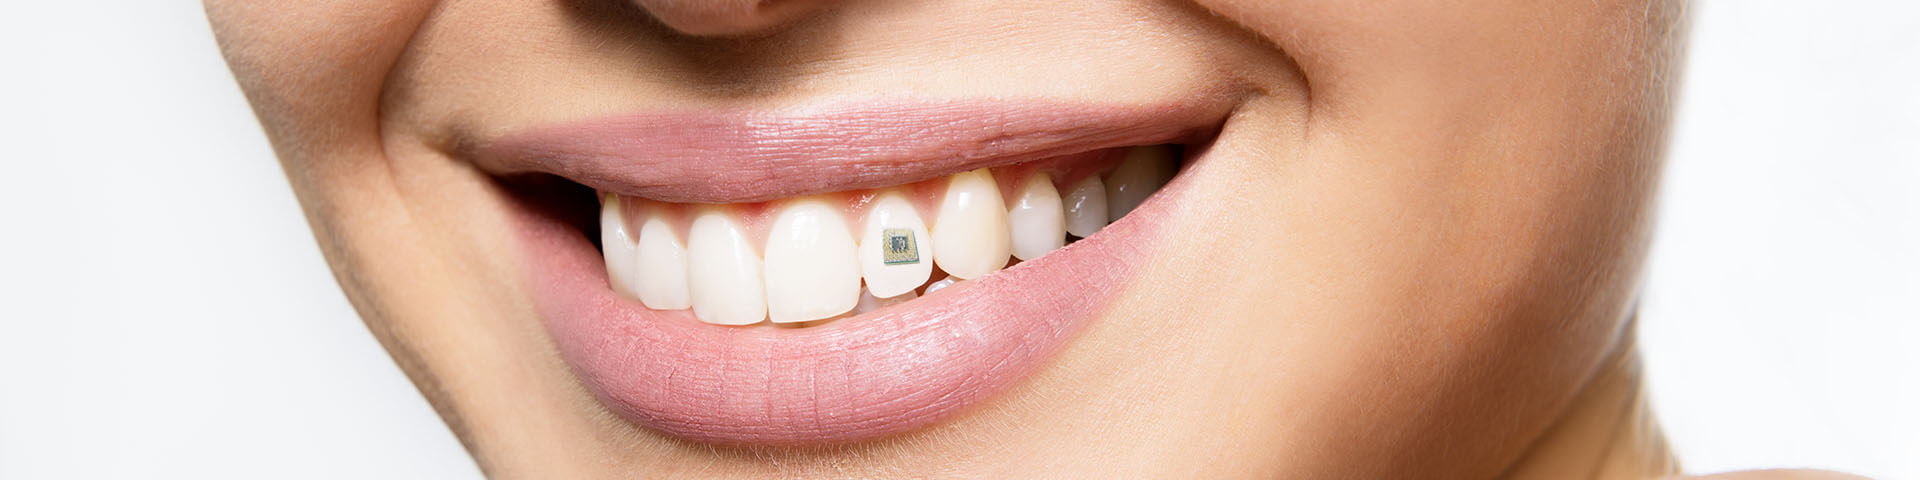 Zahn-Chip trackt was wir wirklich zu uns nehmen